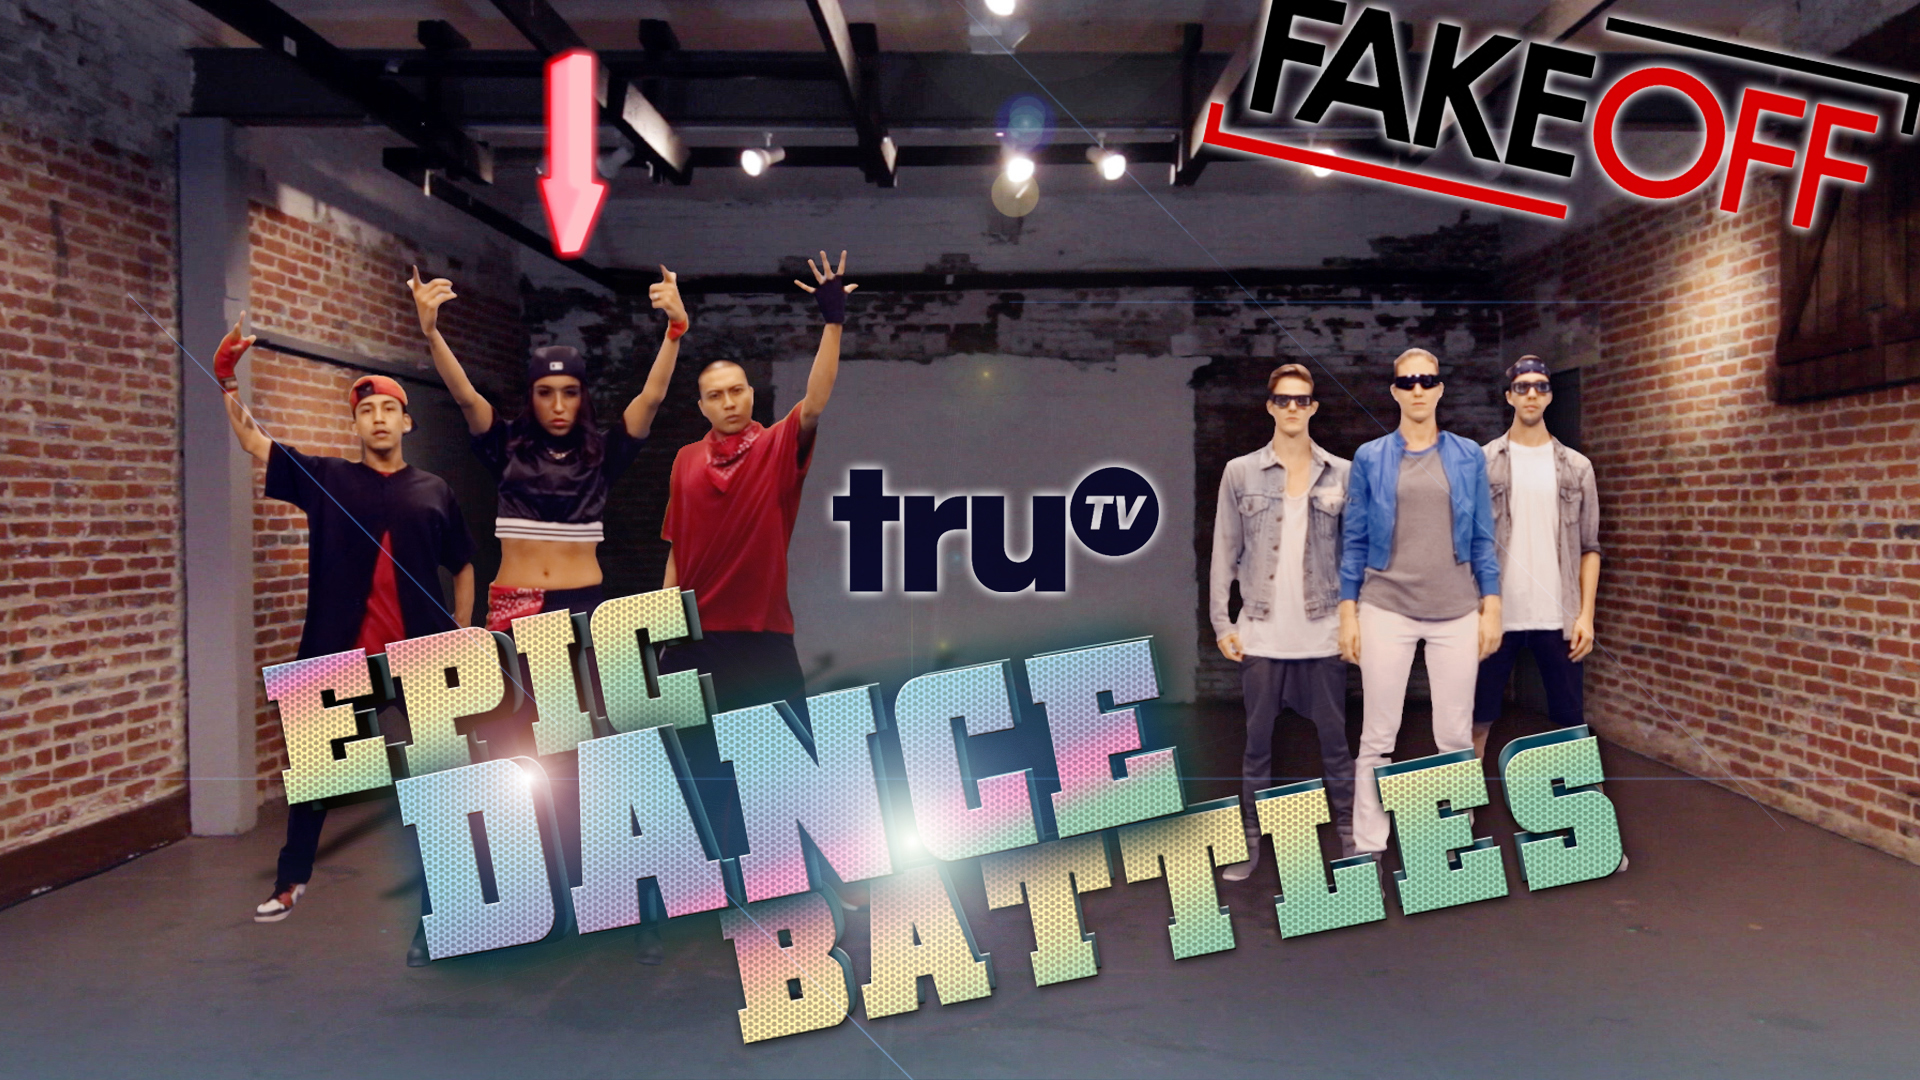 Matt Steffanina’s “Epic Dance Battles” Video Game Tribute :: For truTV’s “Fake Off”